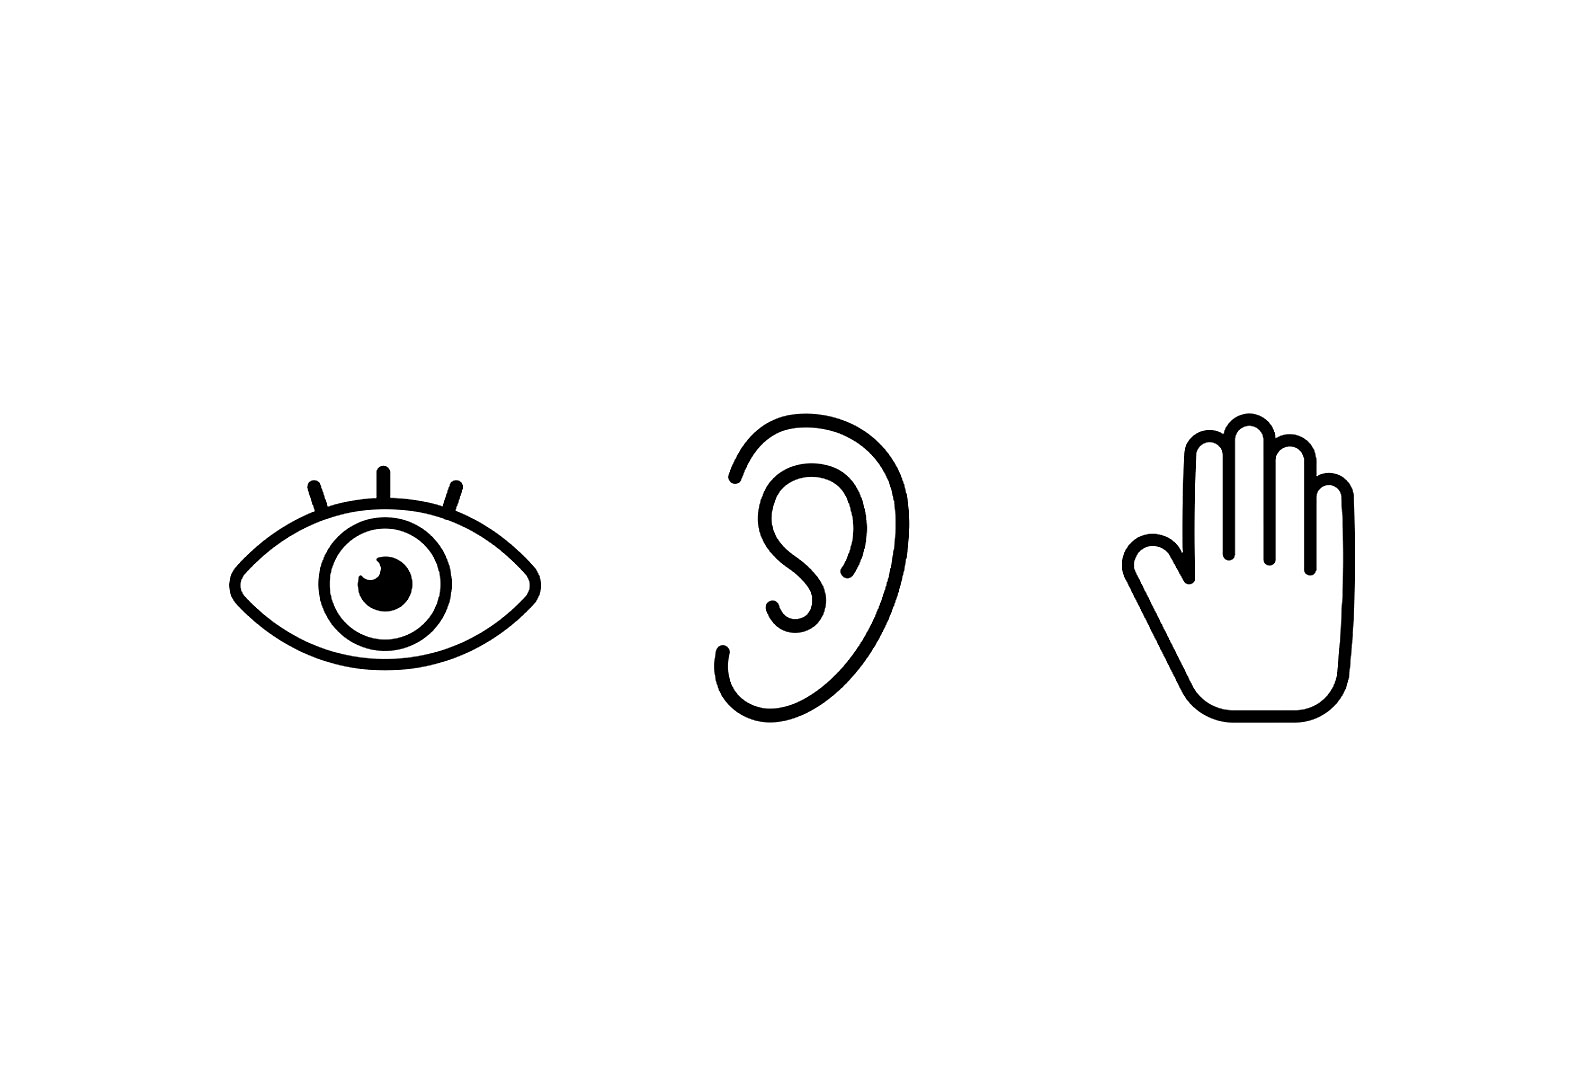 Trys ikonos viena šalia kitos, kairėje – akis, viduryje – ausis, dešinėje – ranka.